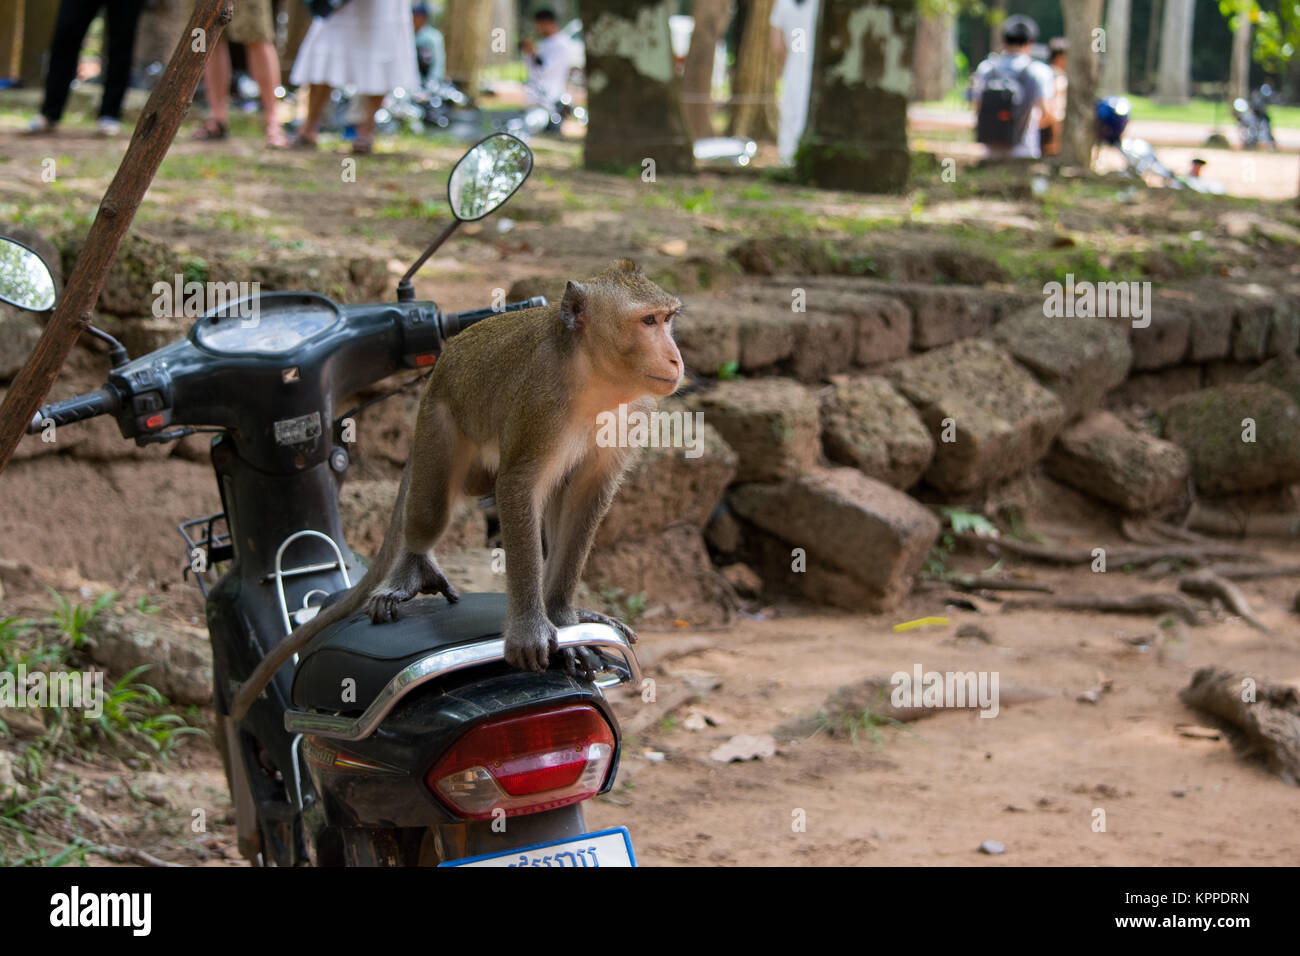 Un adulto scimmia macaco, seduto su una moto sedile, rivolta verso la strada sbagliata. Moto parcheggiata con un ospite a sorpresa. Cambogia, Sud Est asiatico Foto Stock